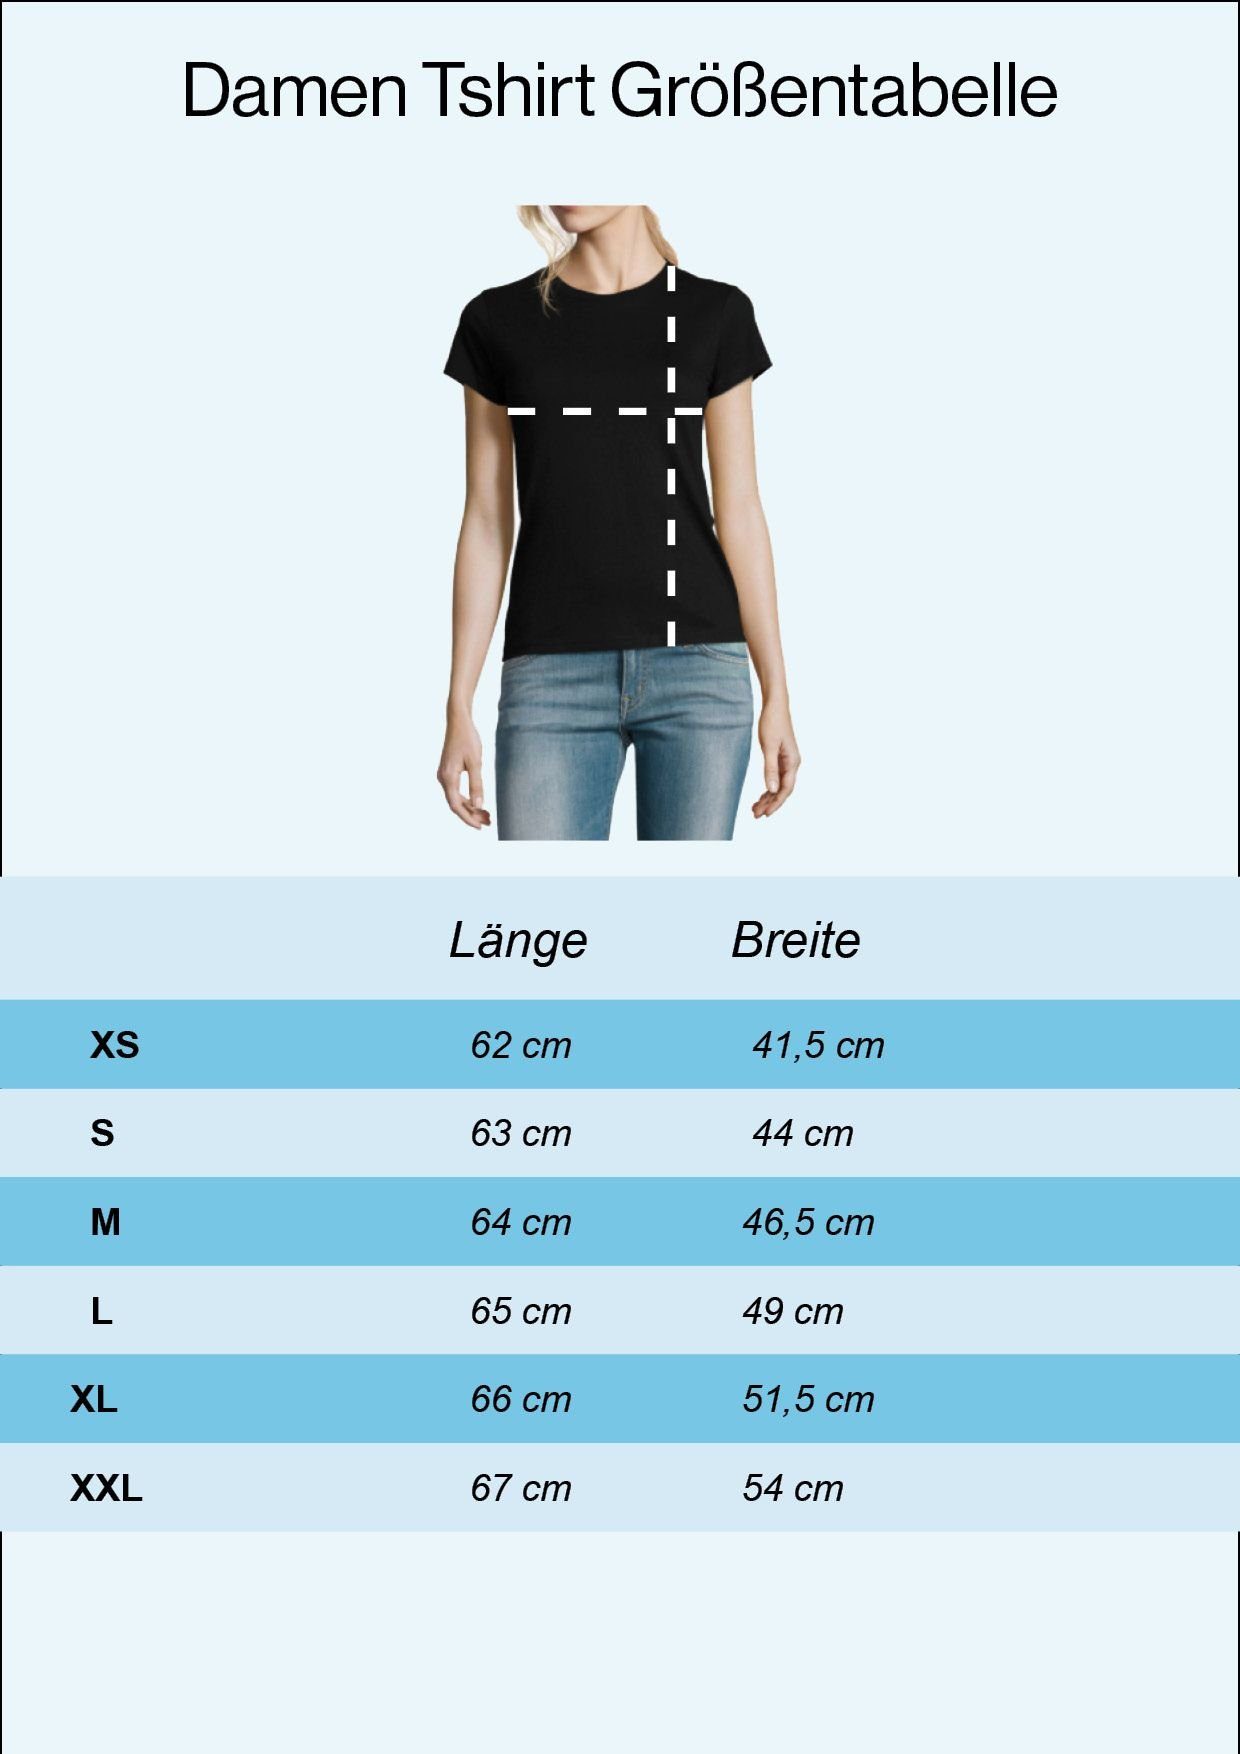 Damen Print Mit Shirt umgekehrt T-Shirt Schwarz Youth Sumsi Designz Mit Po modischem heißt Optimismus